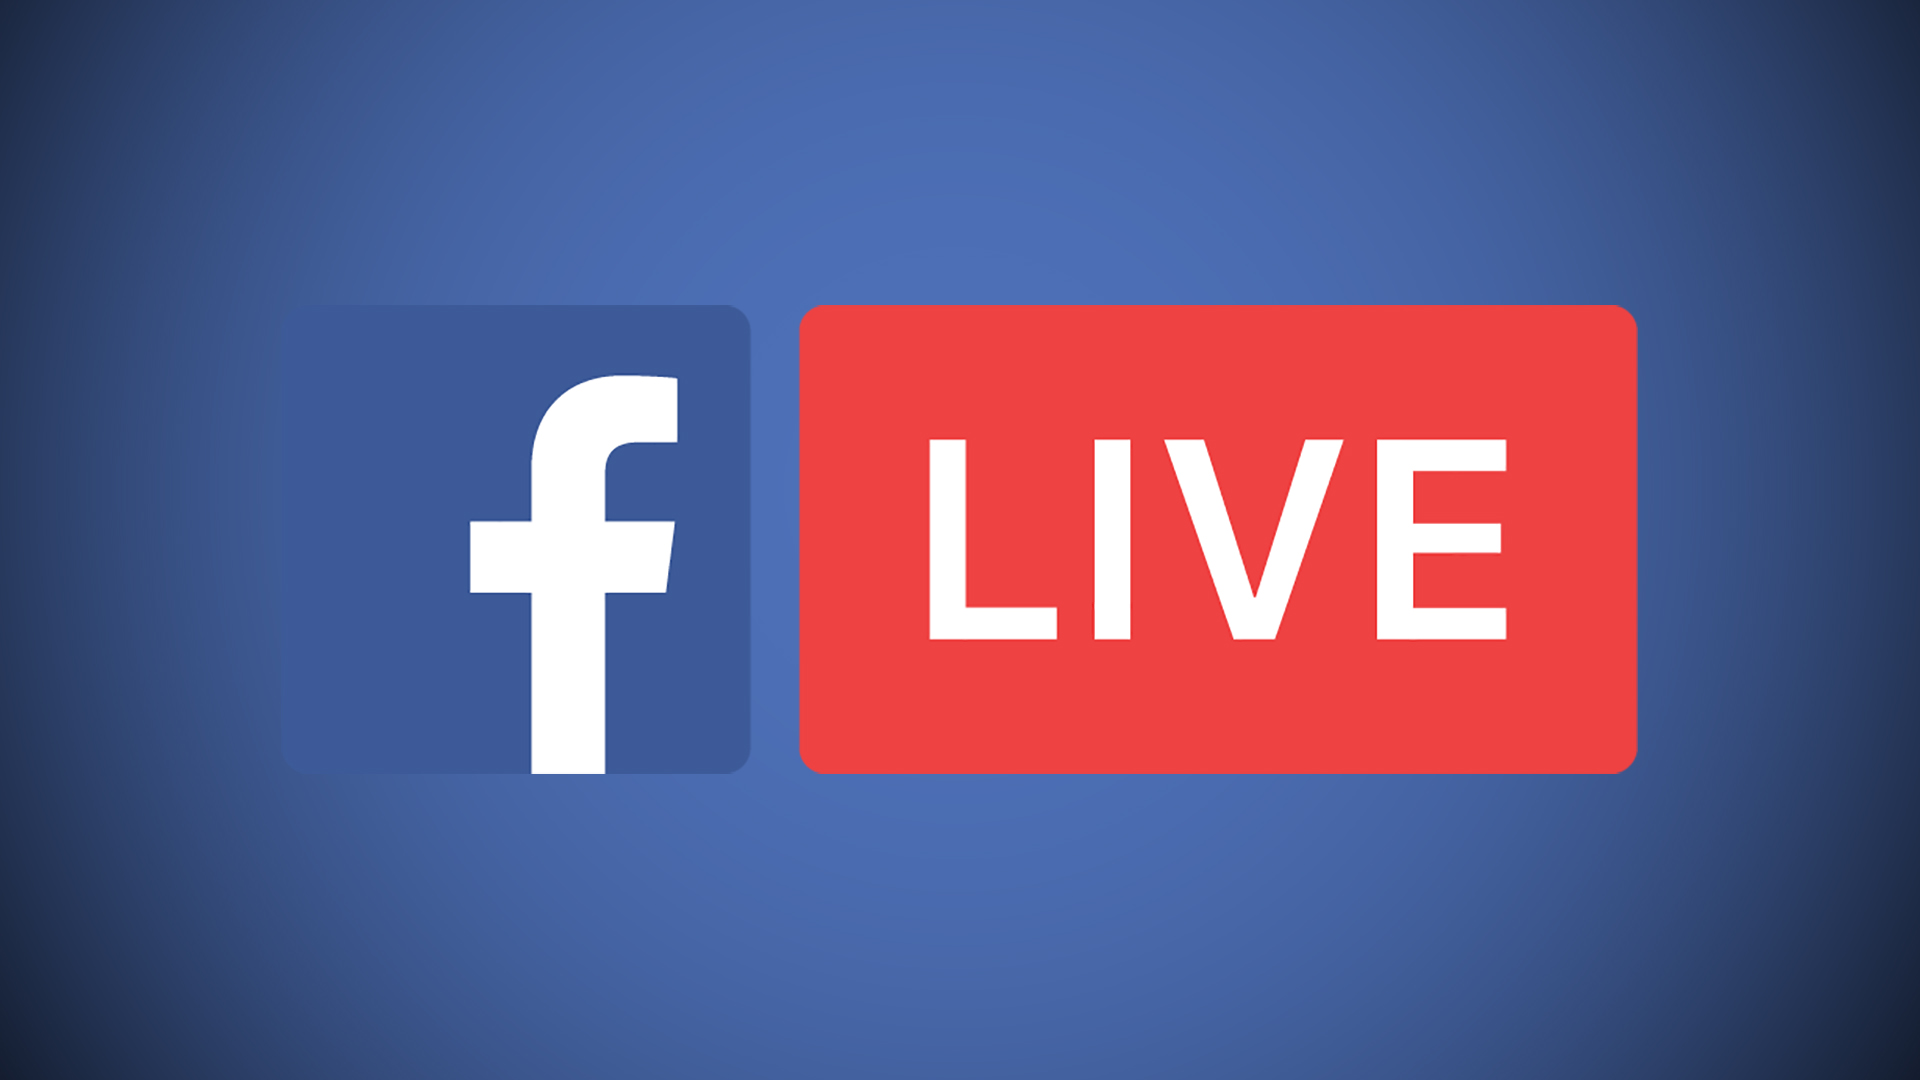 Facebook xác nhận máy tính cũng có thể 'Live Video'